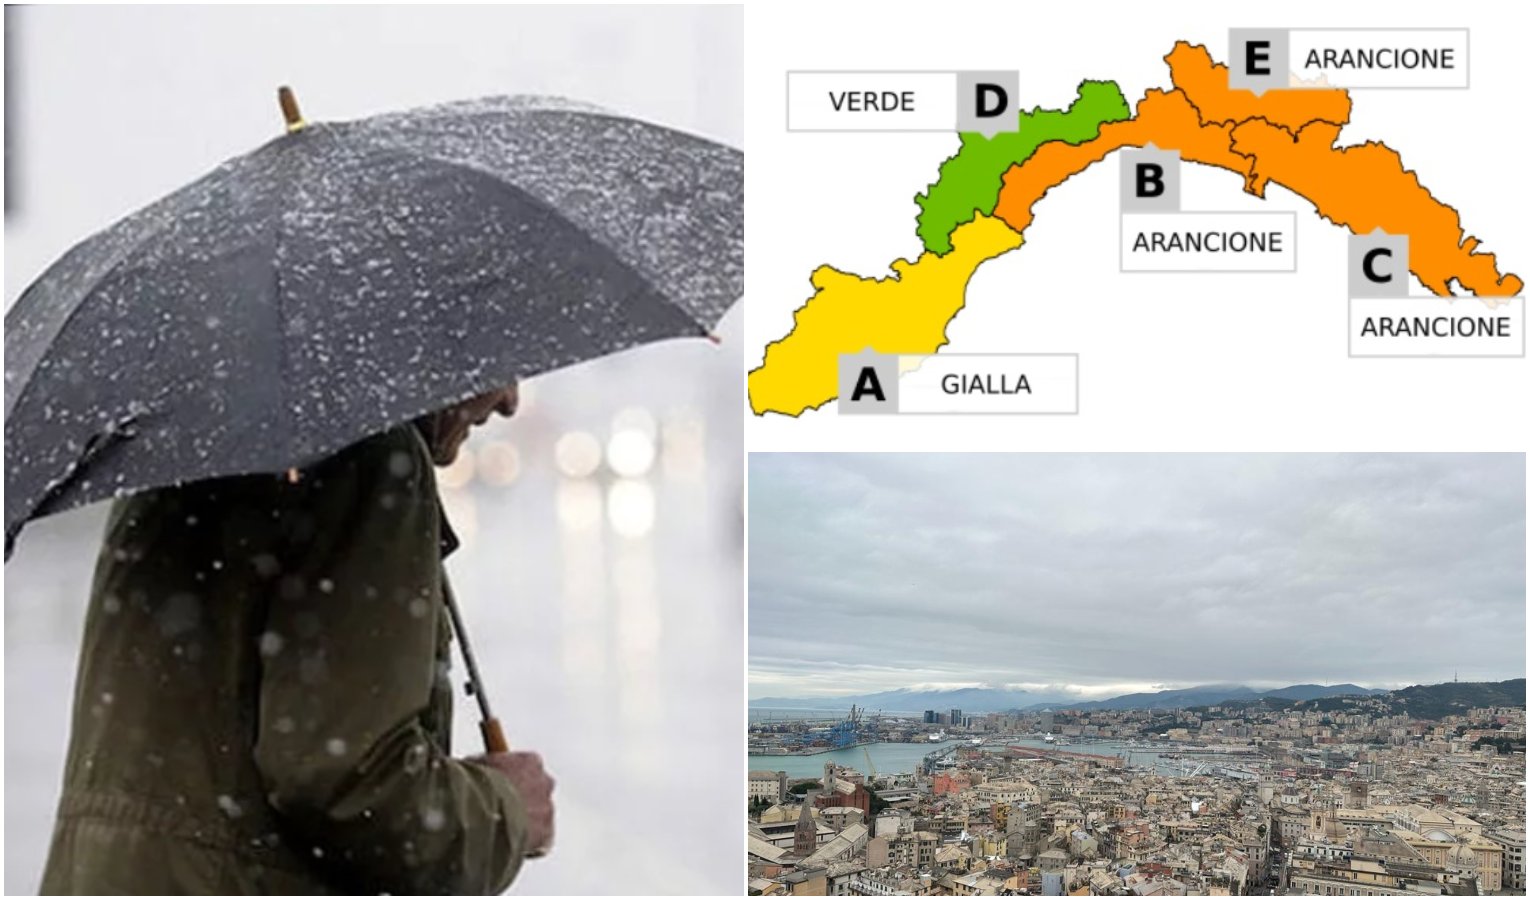 Peggiora il tempo in Liguria, allerta meteo arancione dalle ore 21 sul Centro-Levante